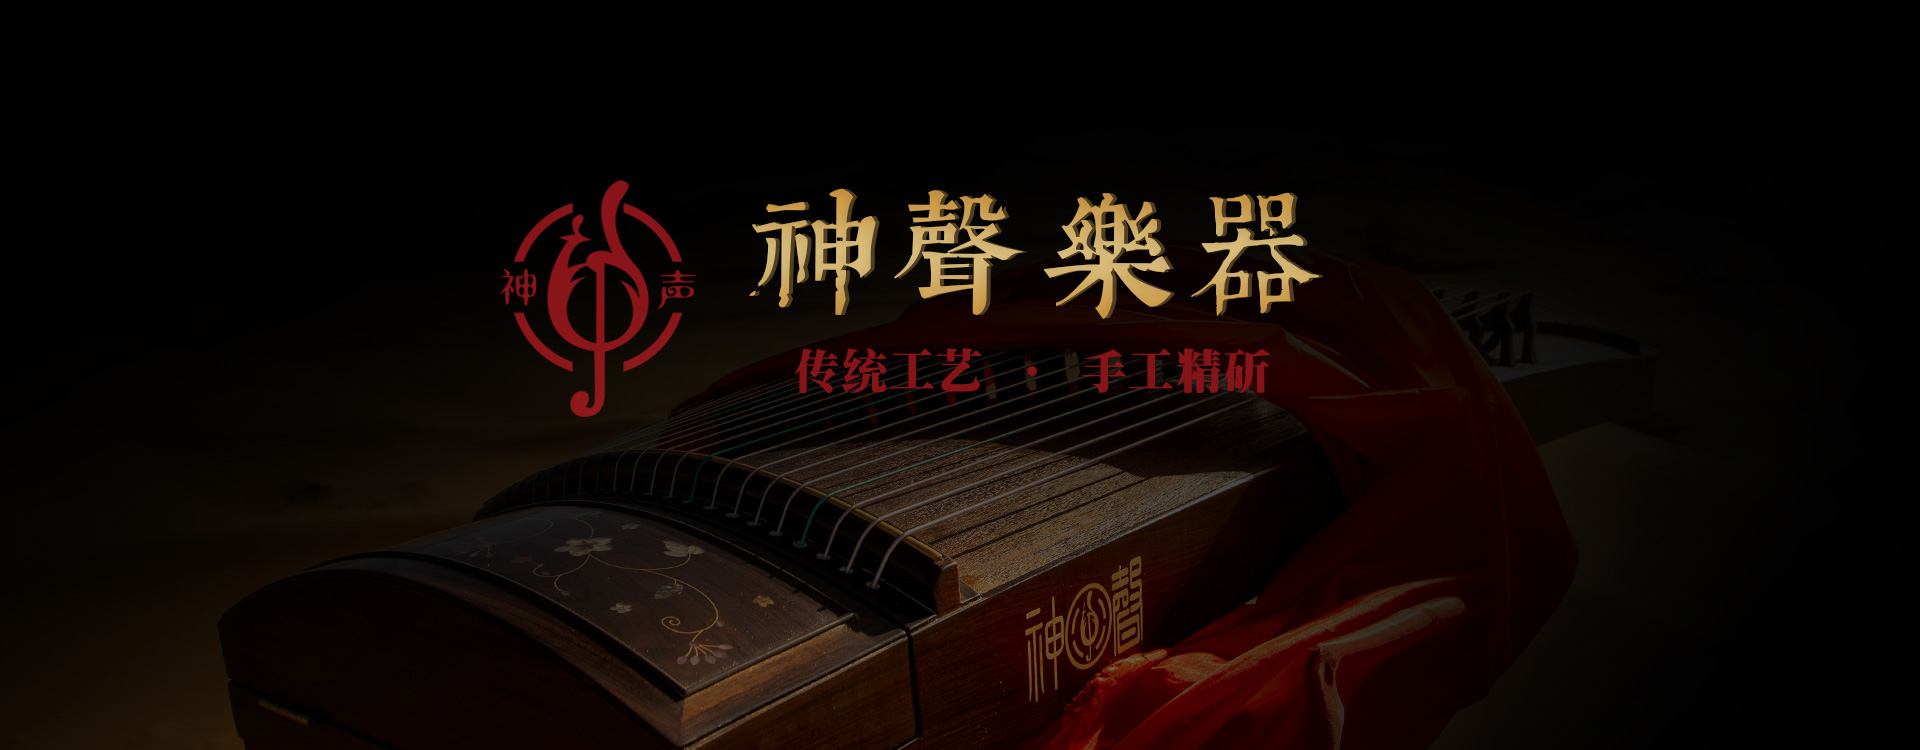 上海神声古筝传统工艺手